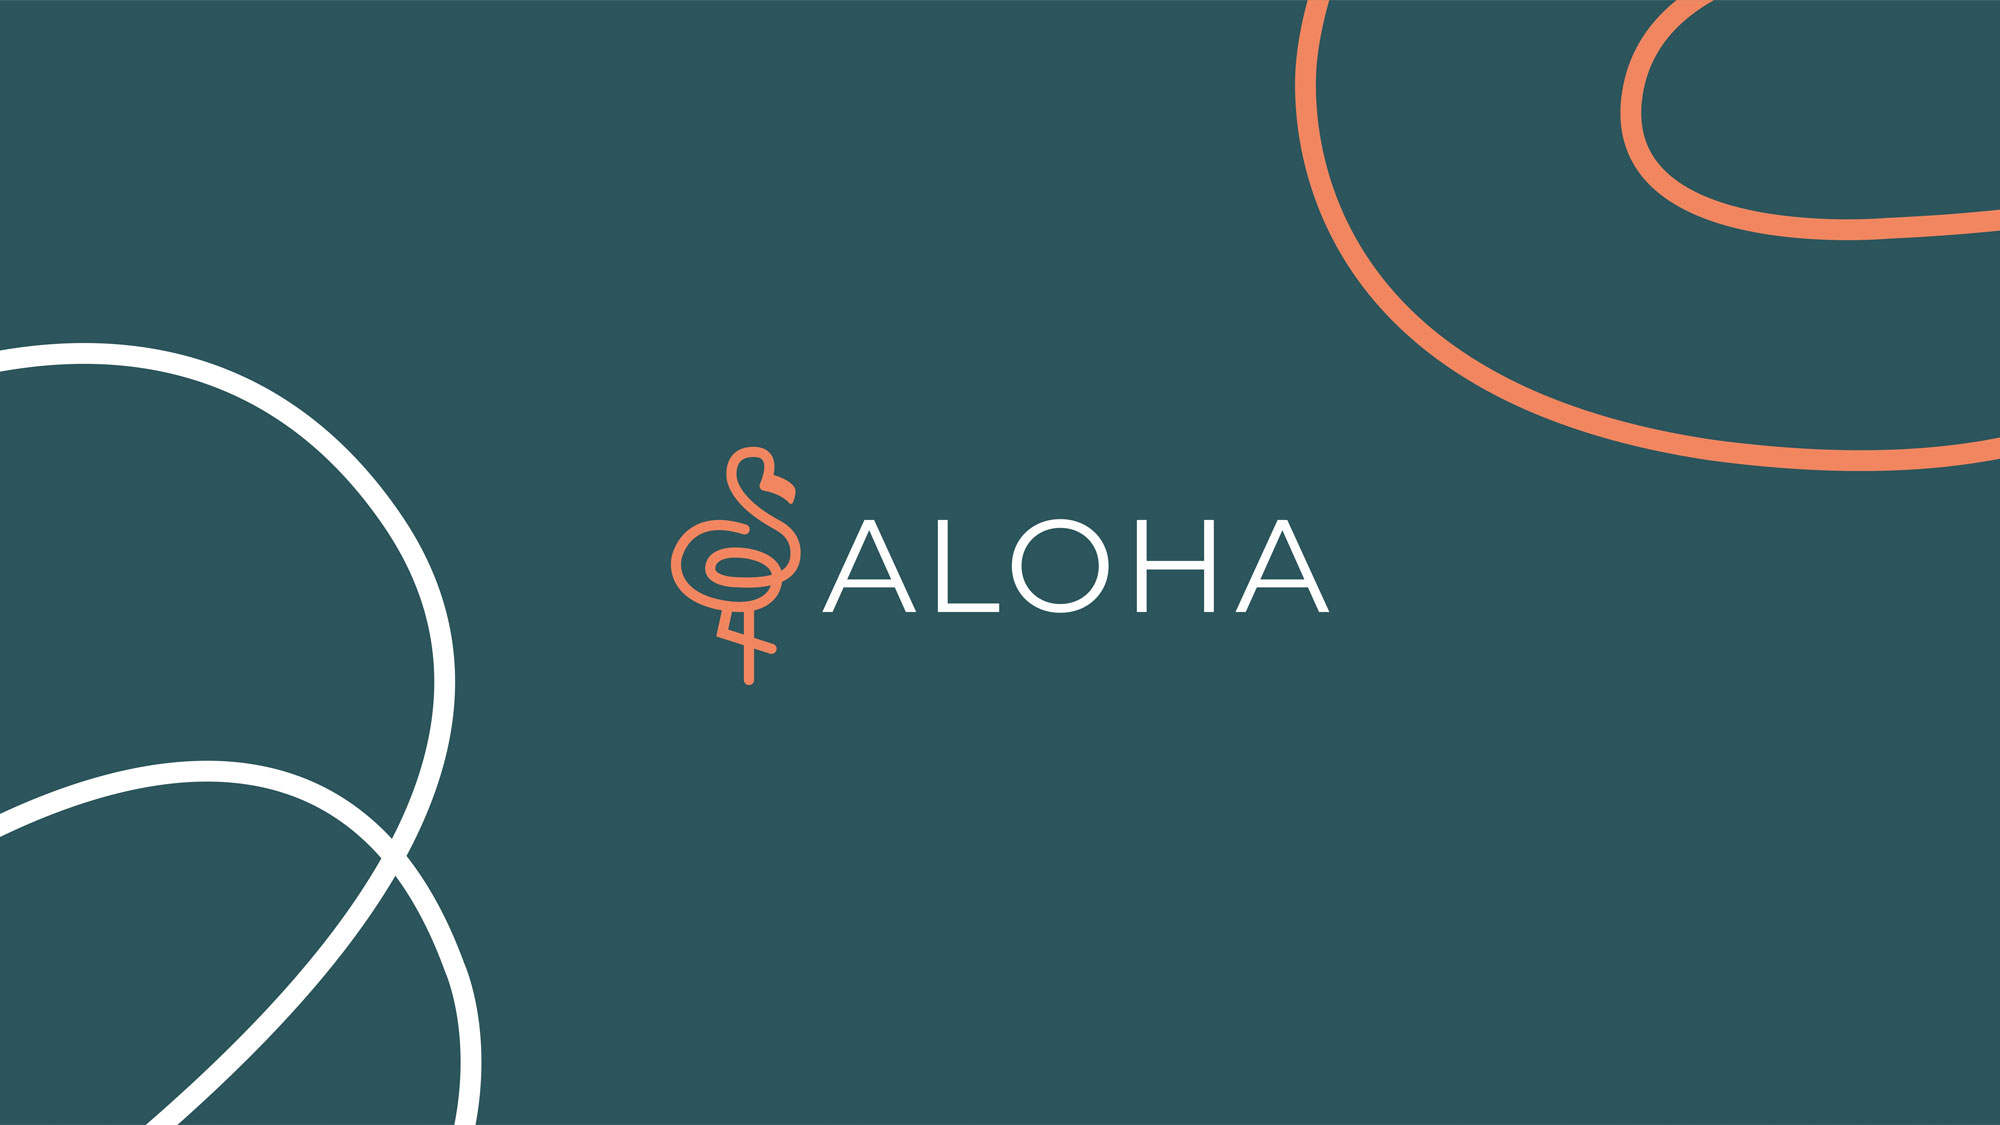 Logo e brand identity di Aloha realizzato da SEBA! grafico di Gravellona Toce nel VCO della versione di logo arancione e bianca su sfondo blu